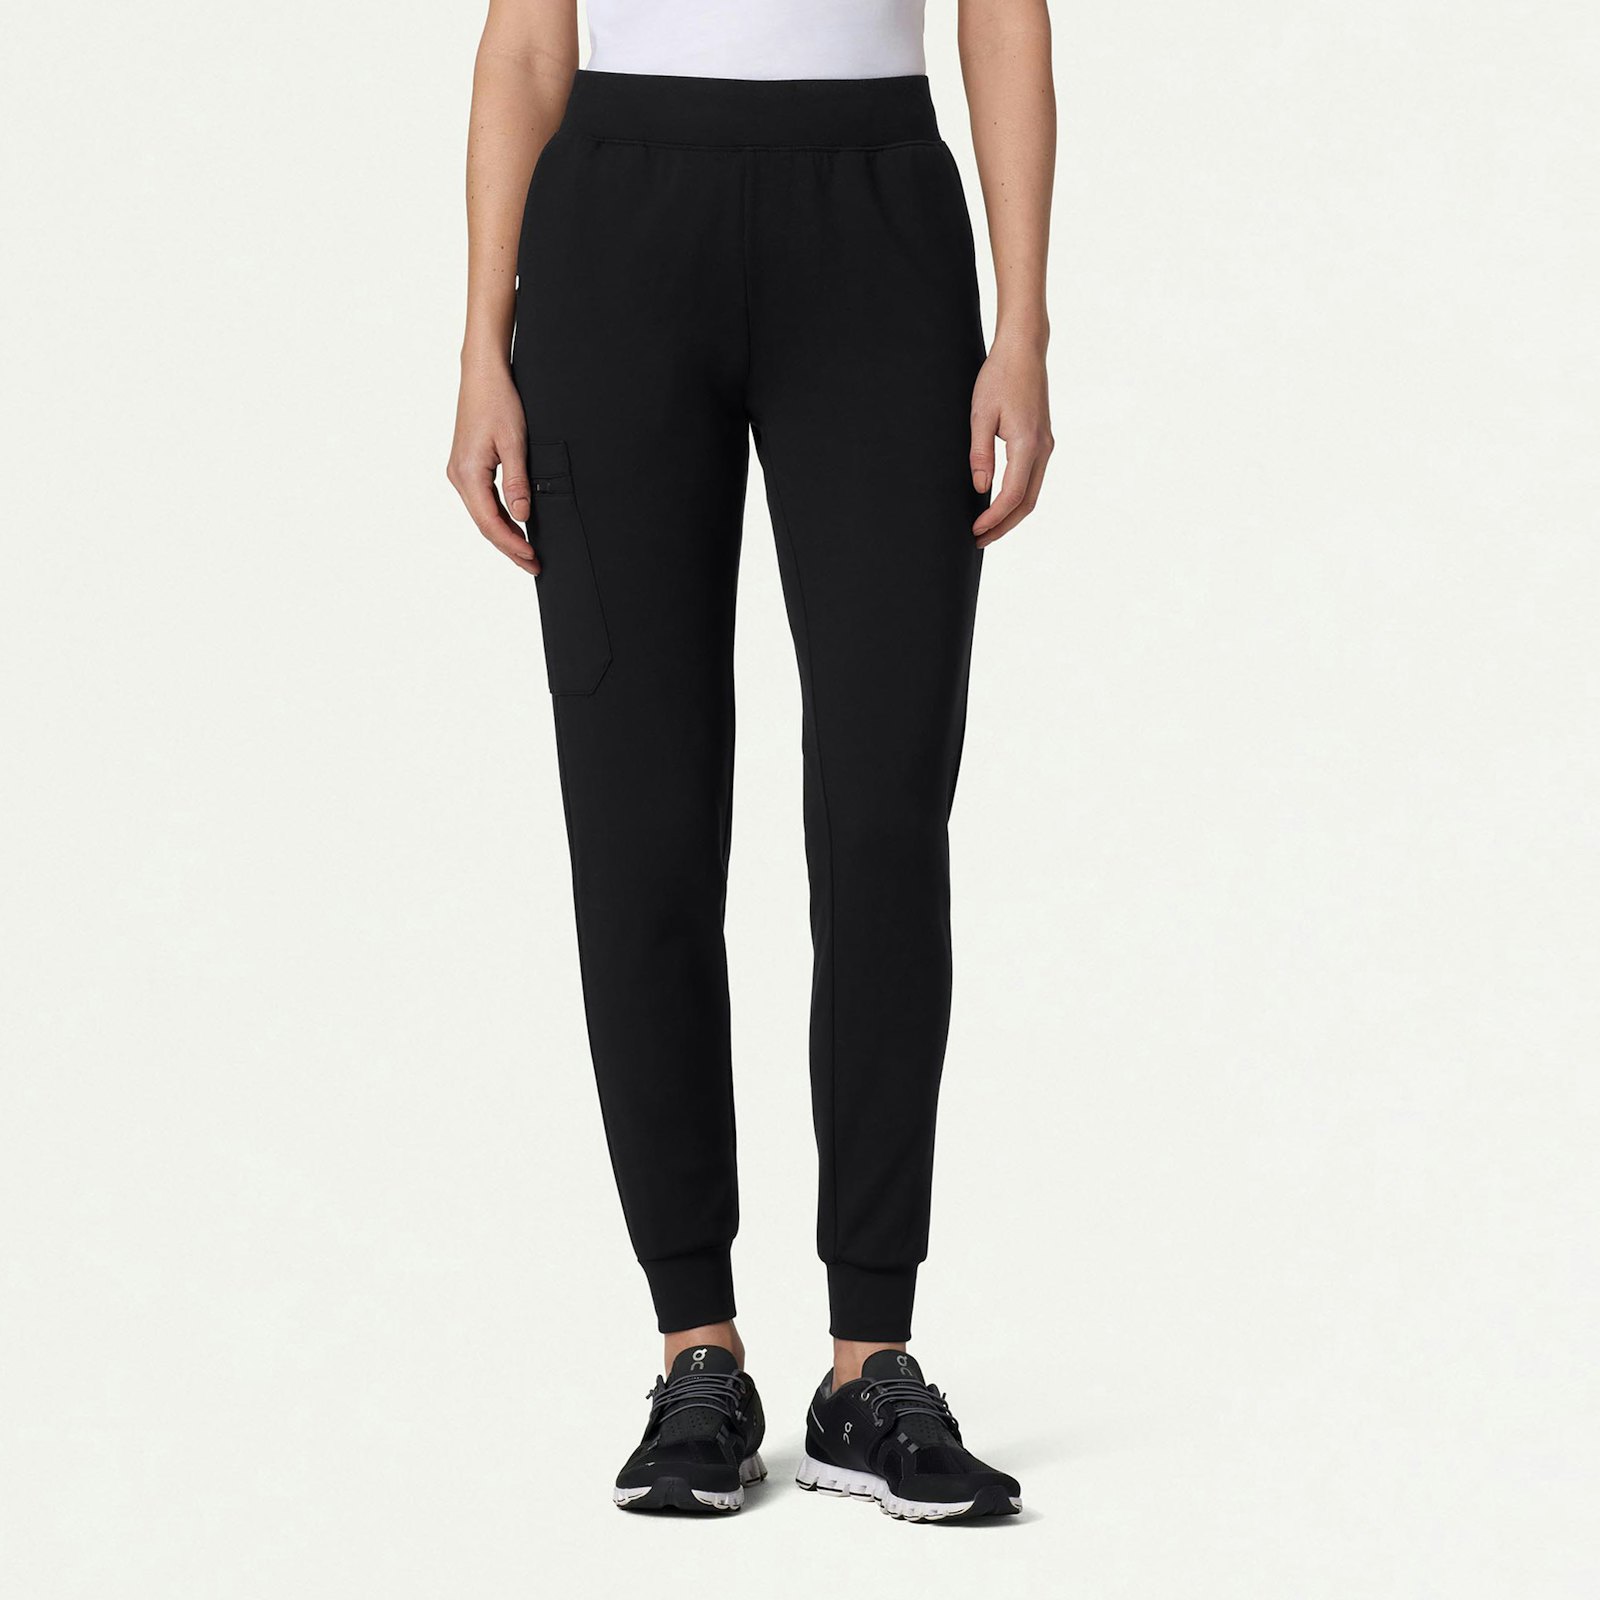 Charmour - Long cuffed jogger PJ pants - Romantic match. Colour: black.  Size: s